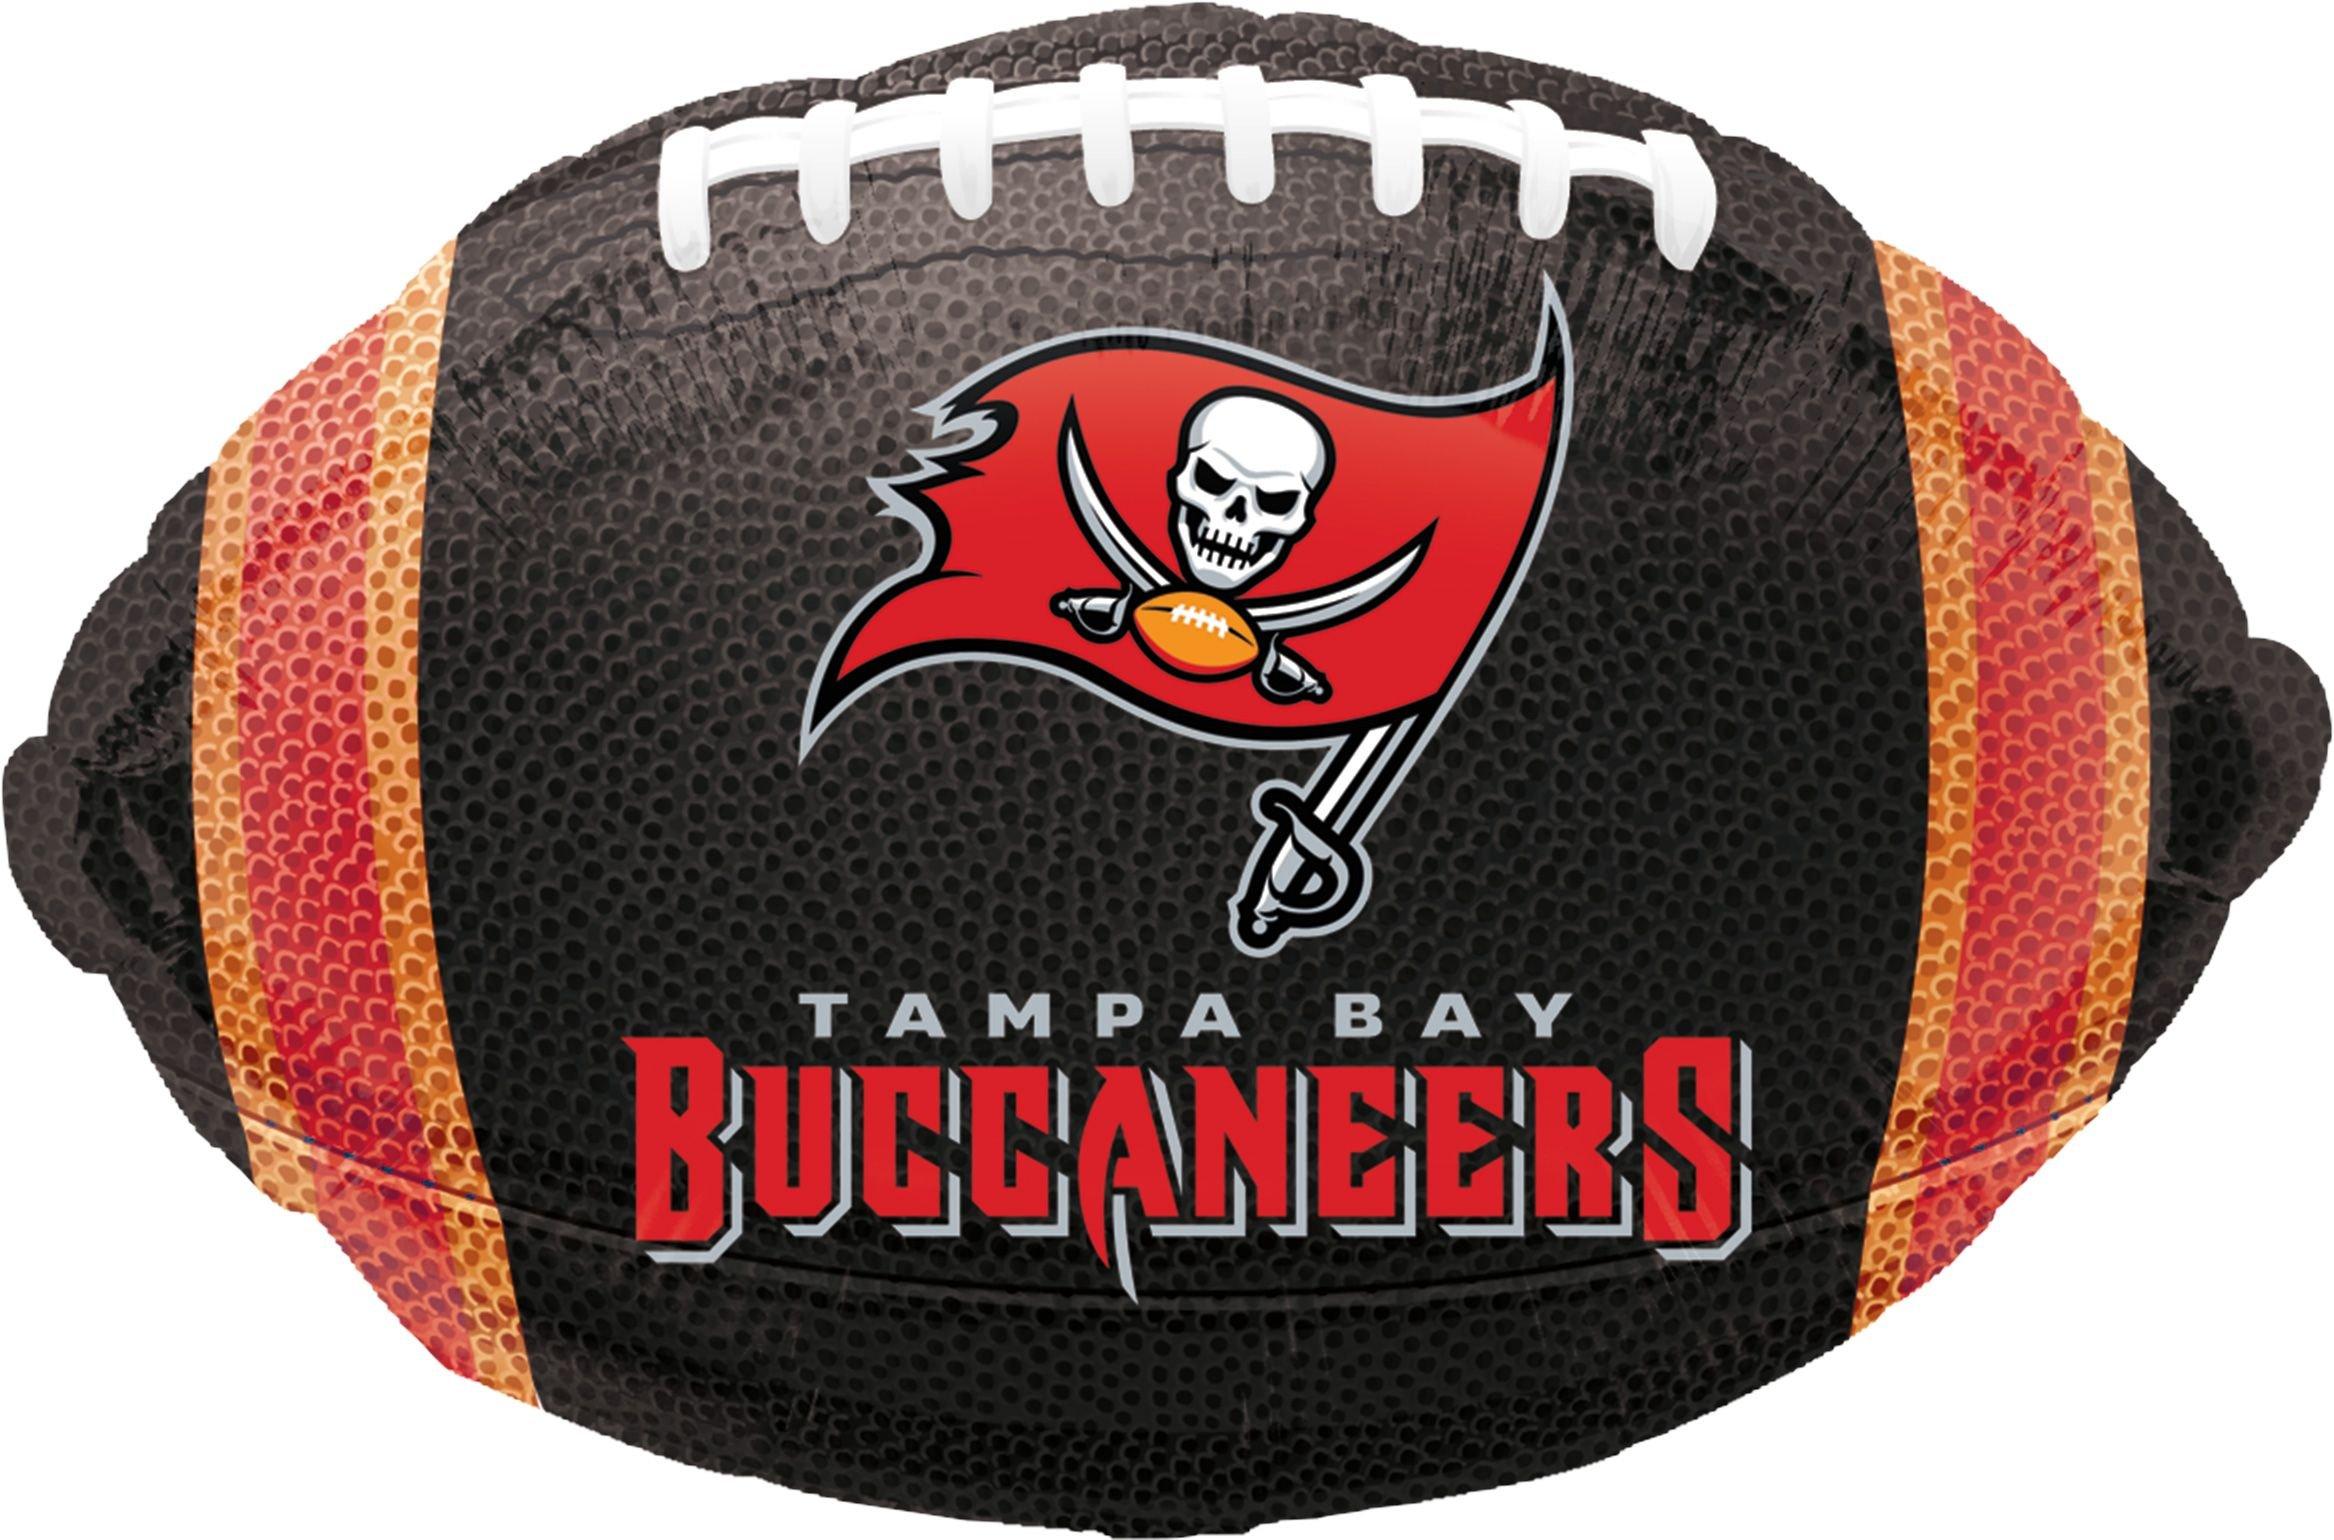 Tampa Bay Buccaneers Balloon - Football